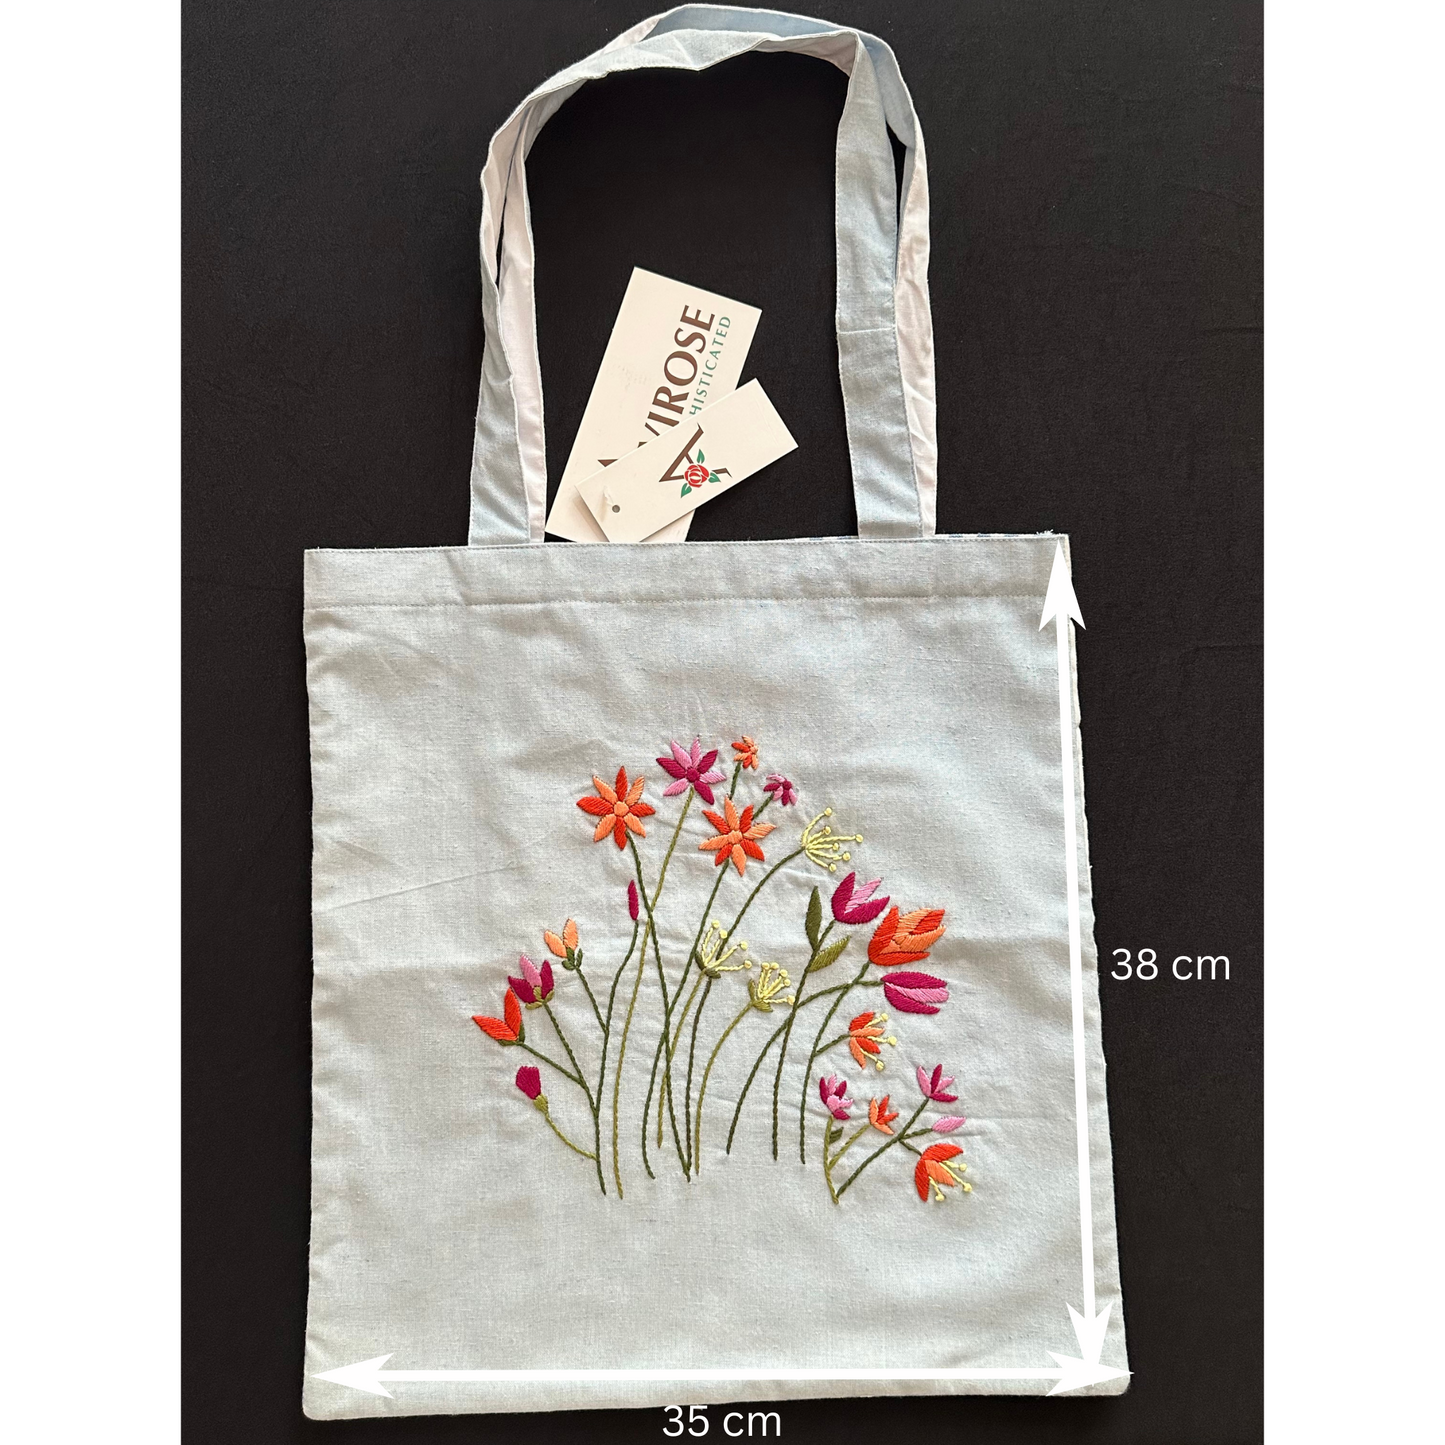 Handmade Tote Bag: Pretty Flowers